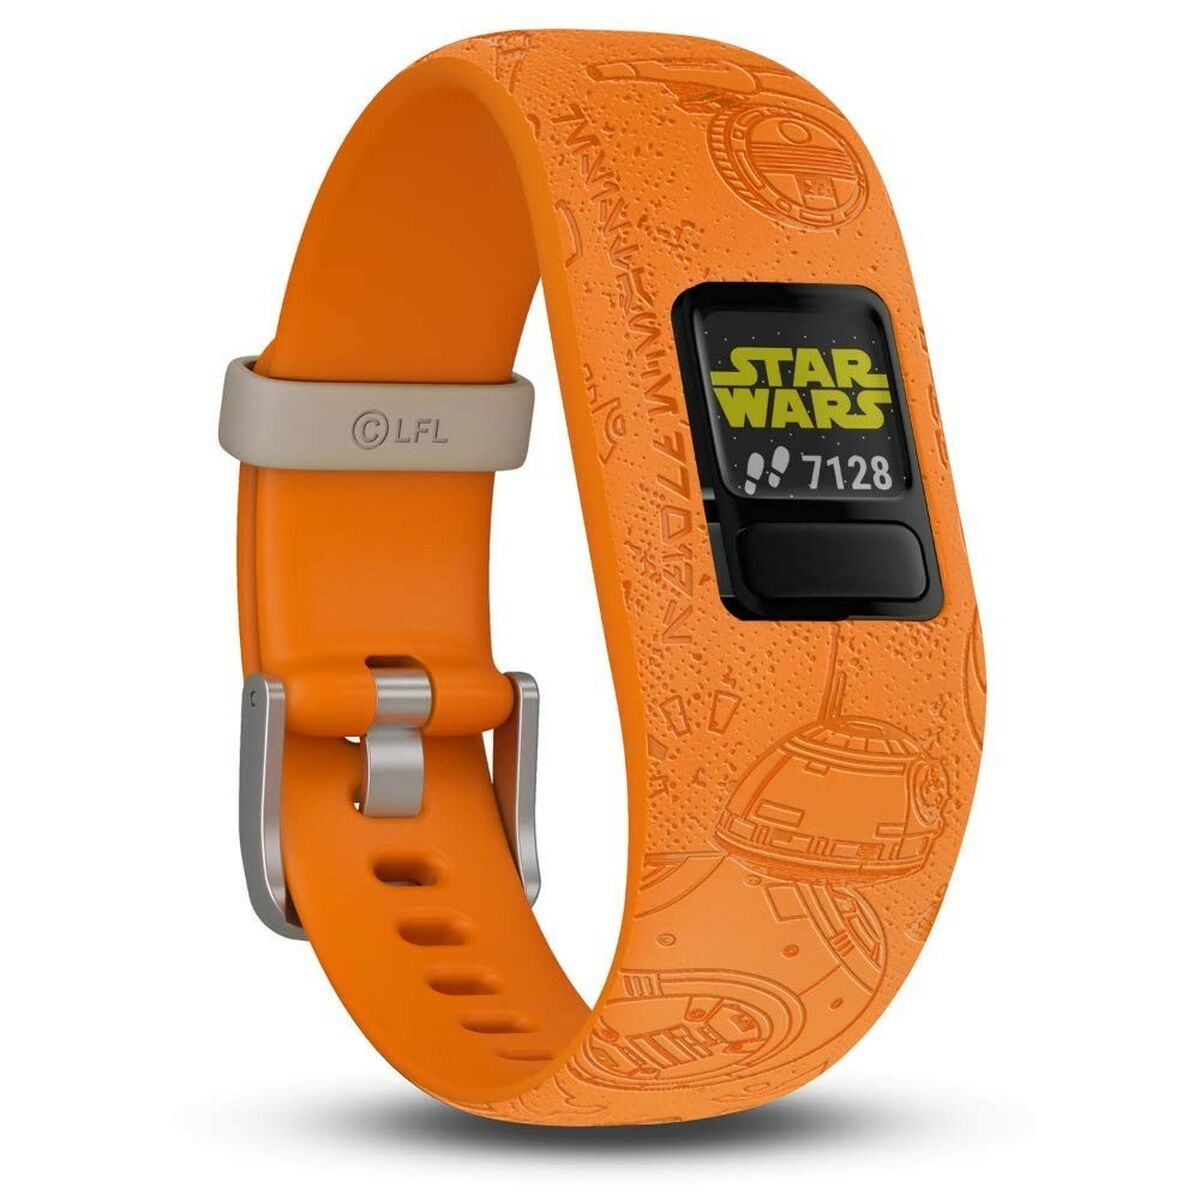 Kaufe GARMIN vívofit jr. 2 Star Wars Smartwatch für Kinder bei AWK Flagship um € 100.00